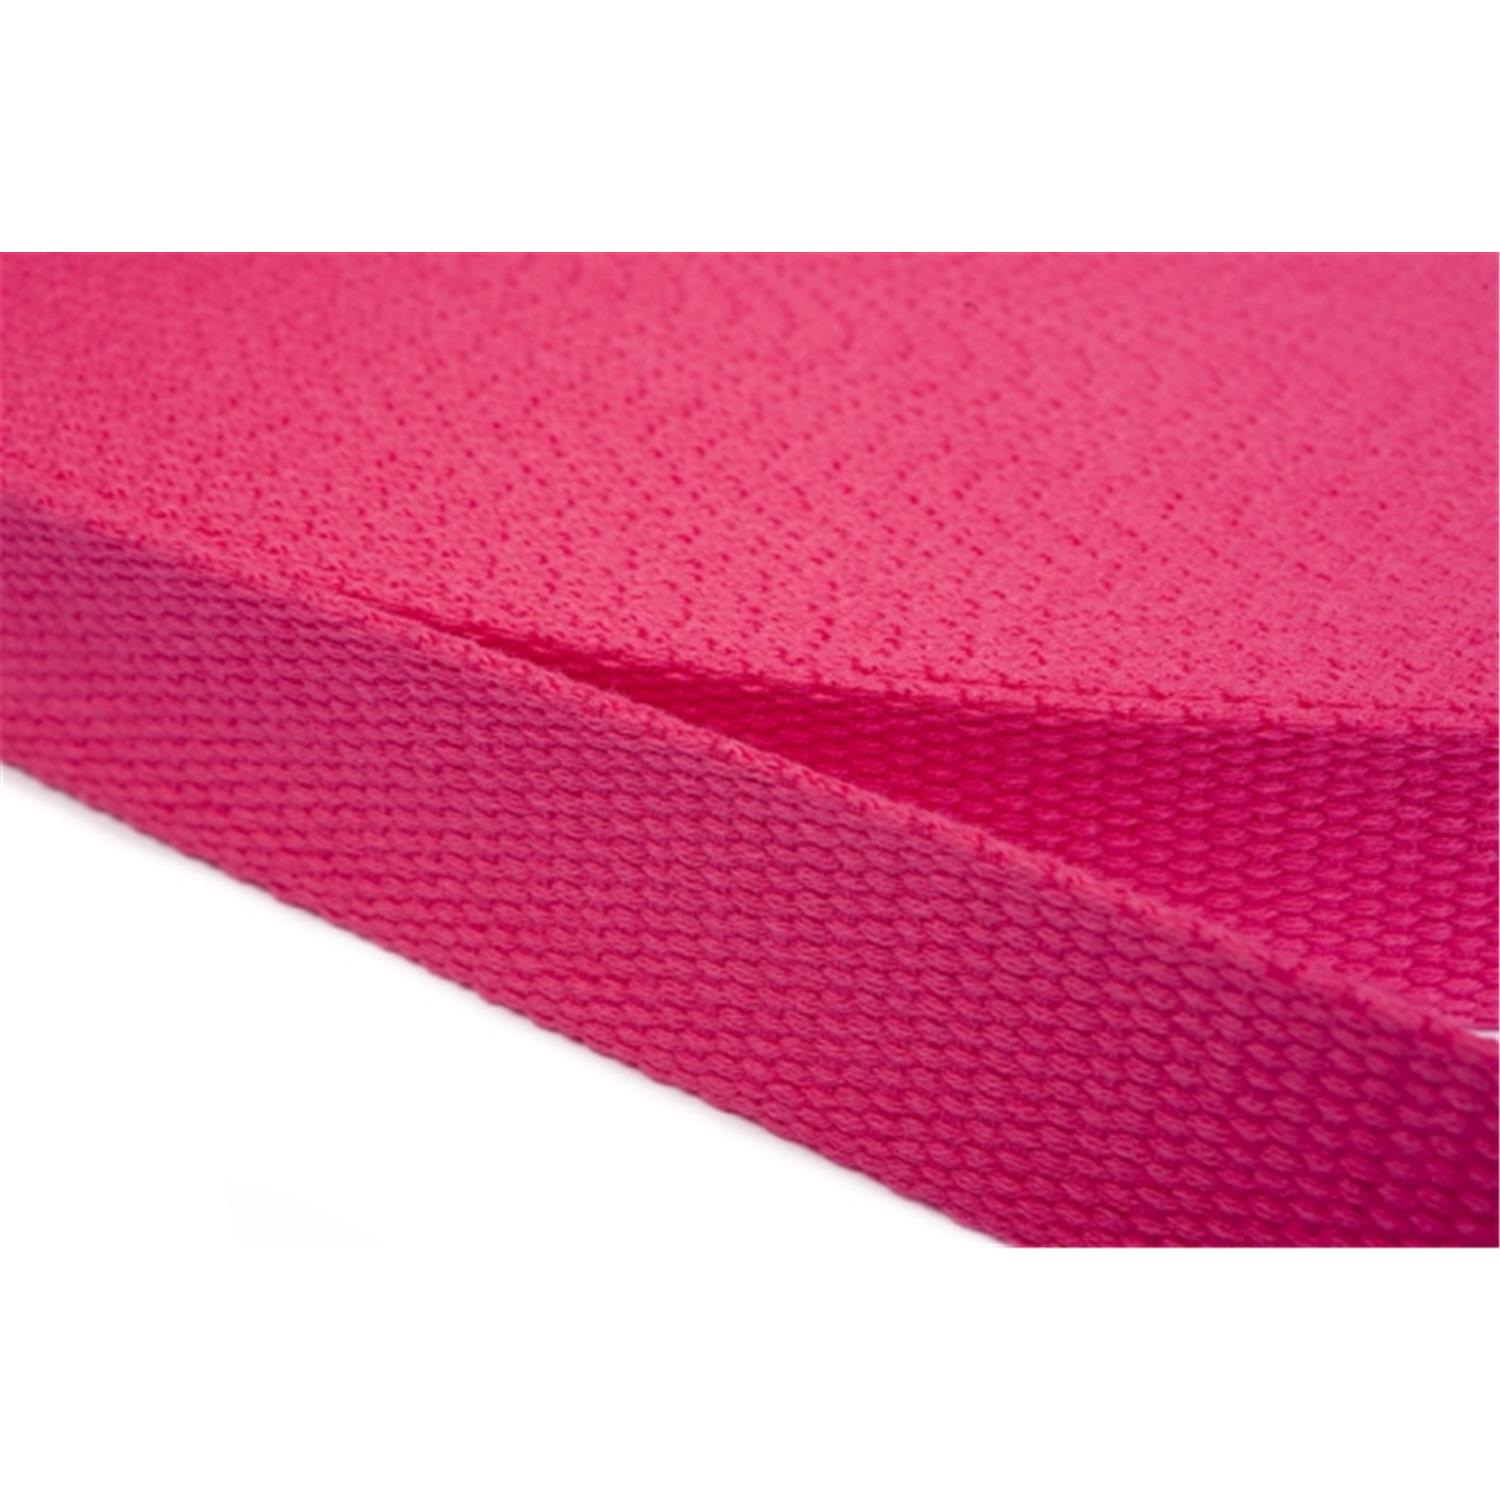 Gurtband aus Baumwolle 25mm in 20 Farben 07 - rosa/pink 12 Meter